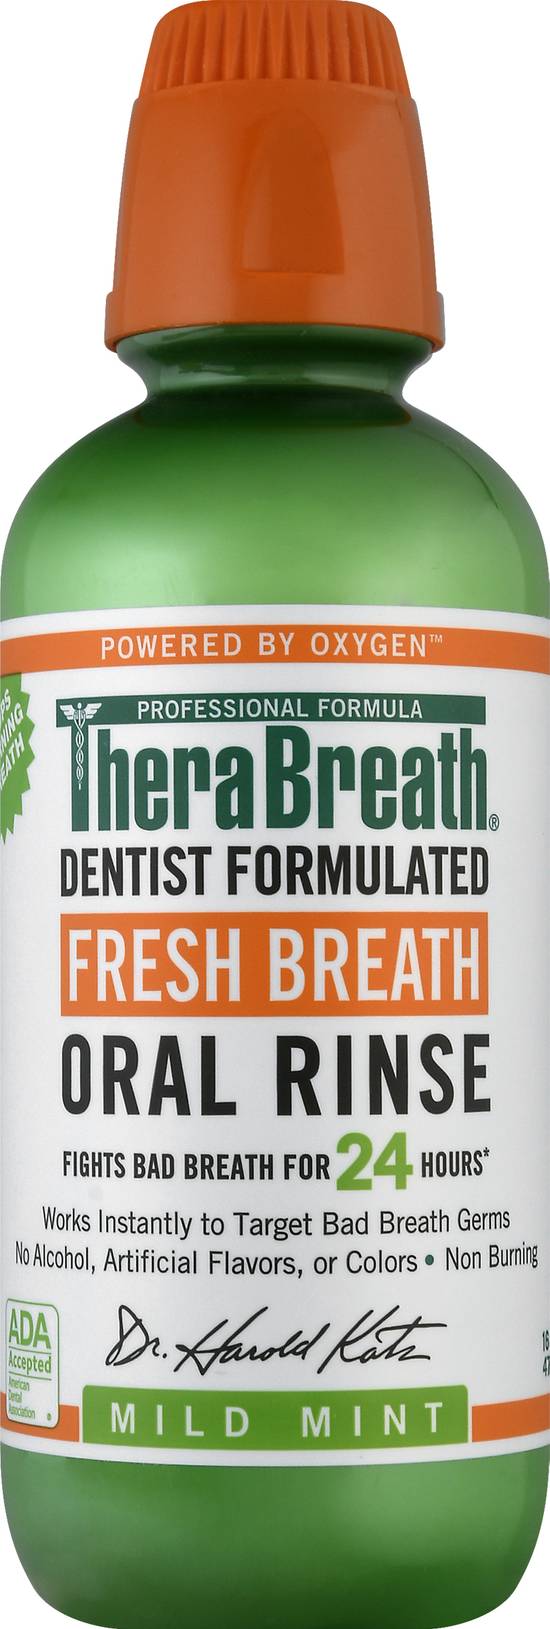 Therabreath Fresh Breath Mild Mint Oral Rinse (16 fl oz)